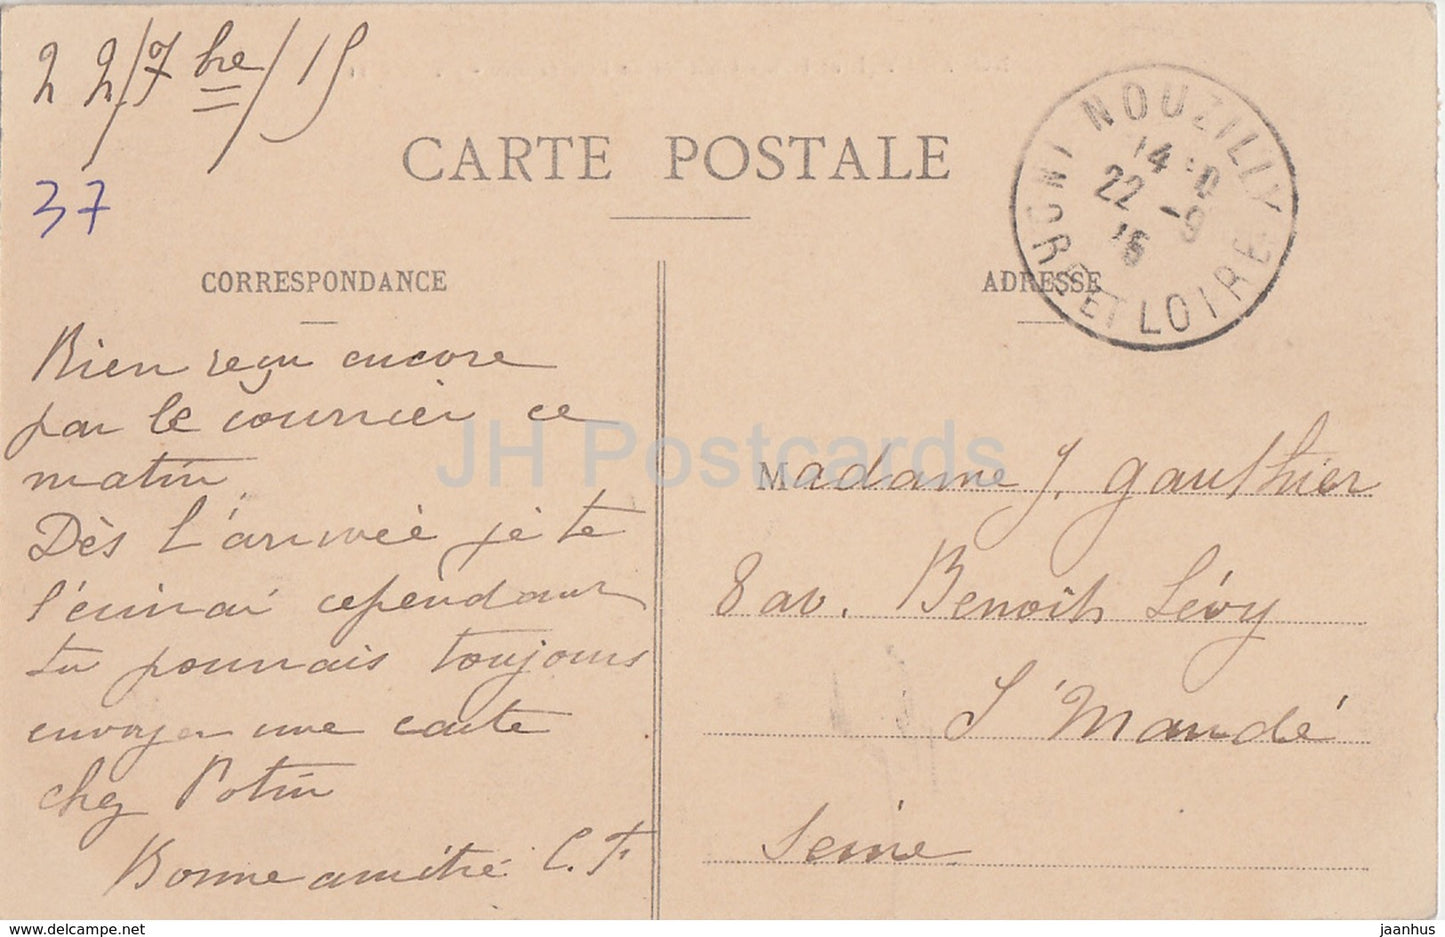 Nouzilly - Château de l'Orfraisiere - château - 11 - carte postale ancienne - 1916 - France - utilisé